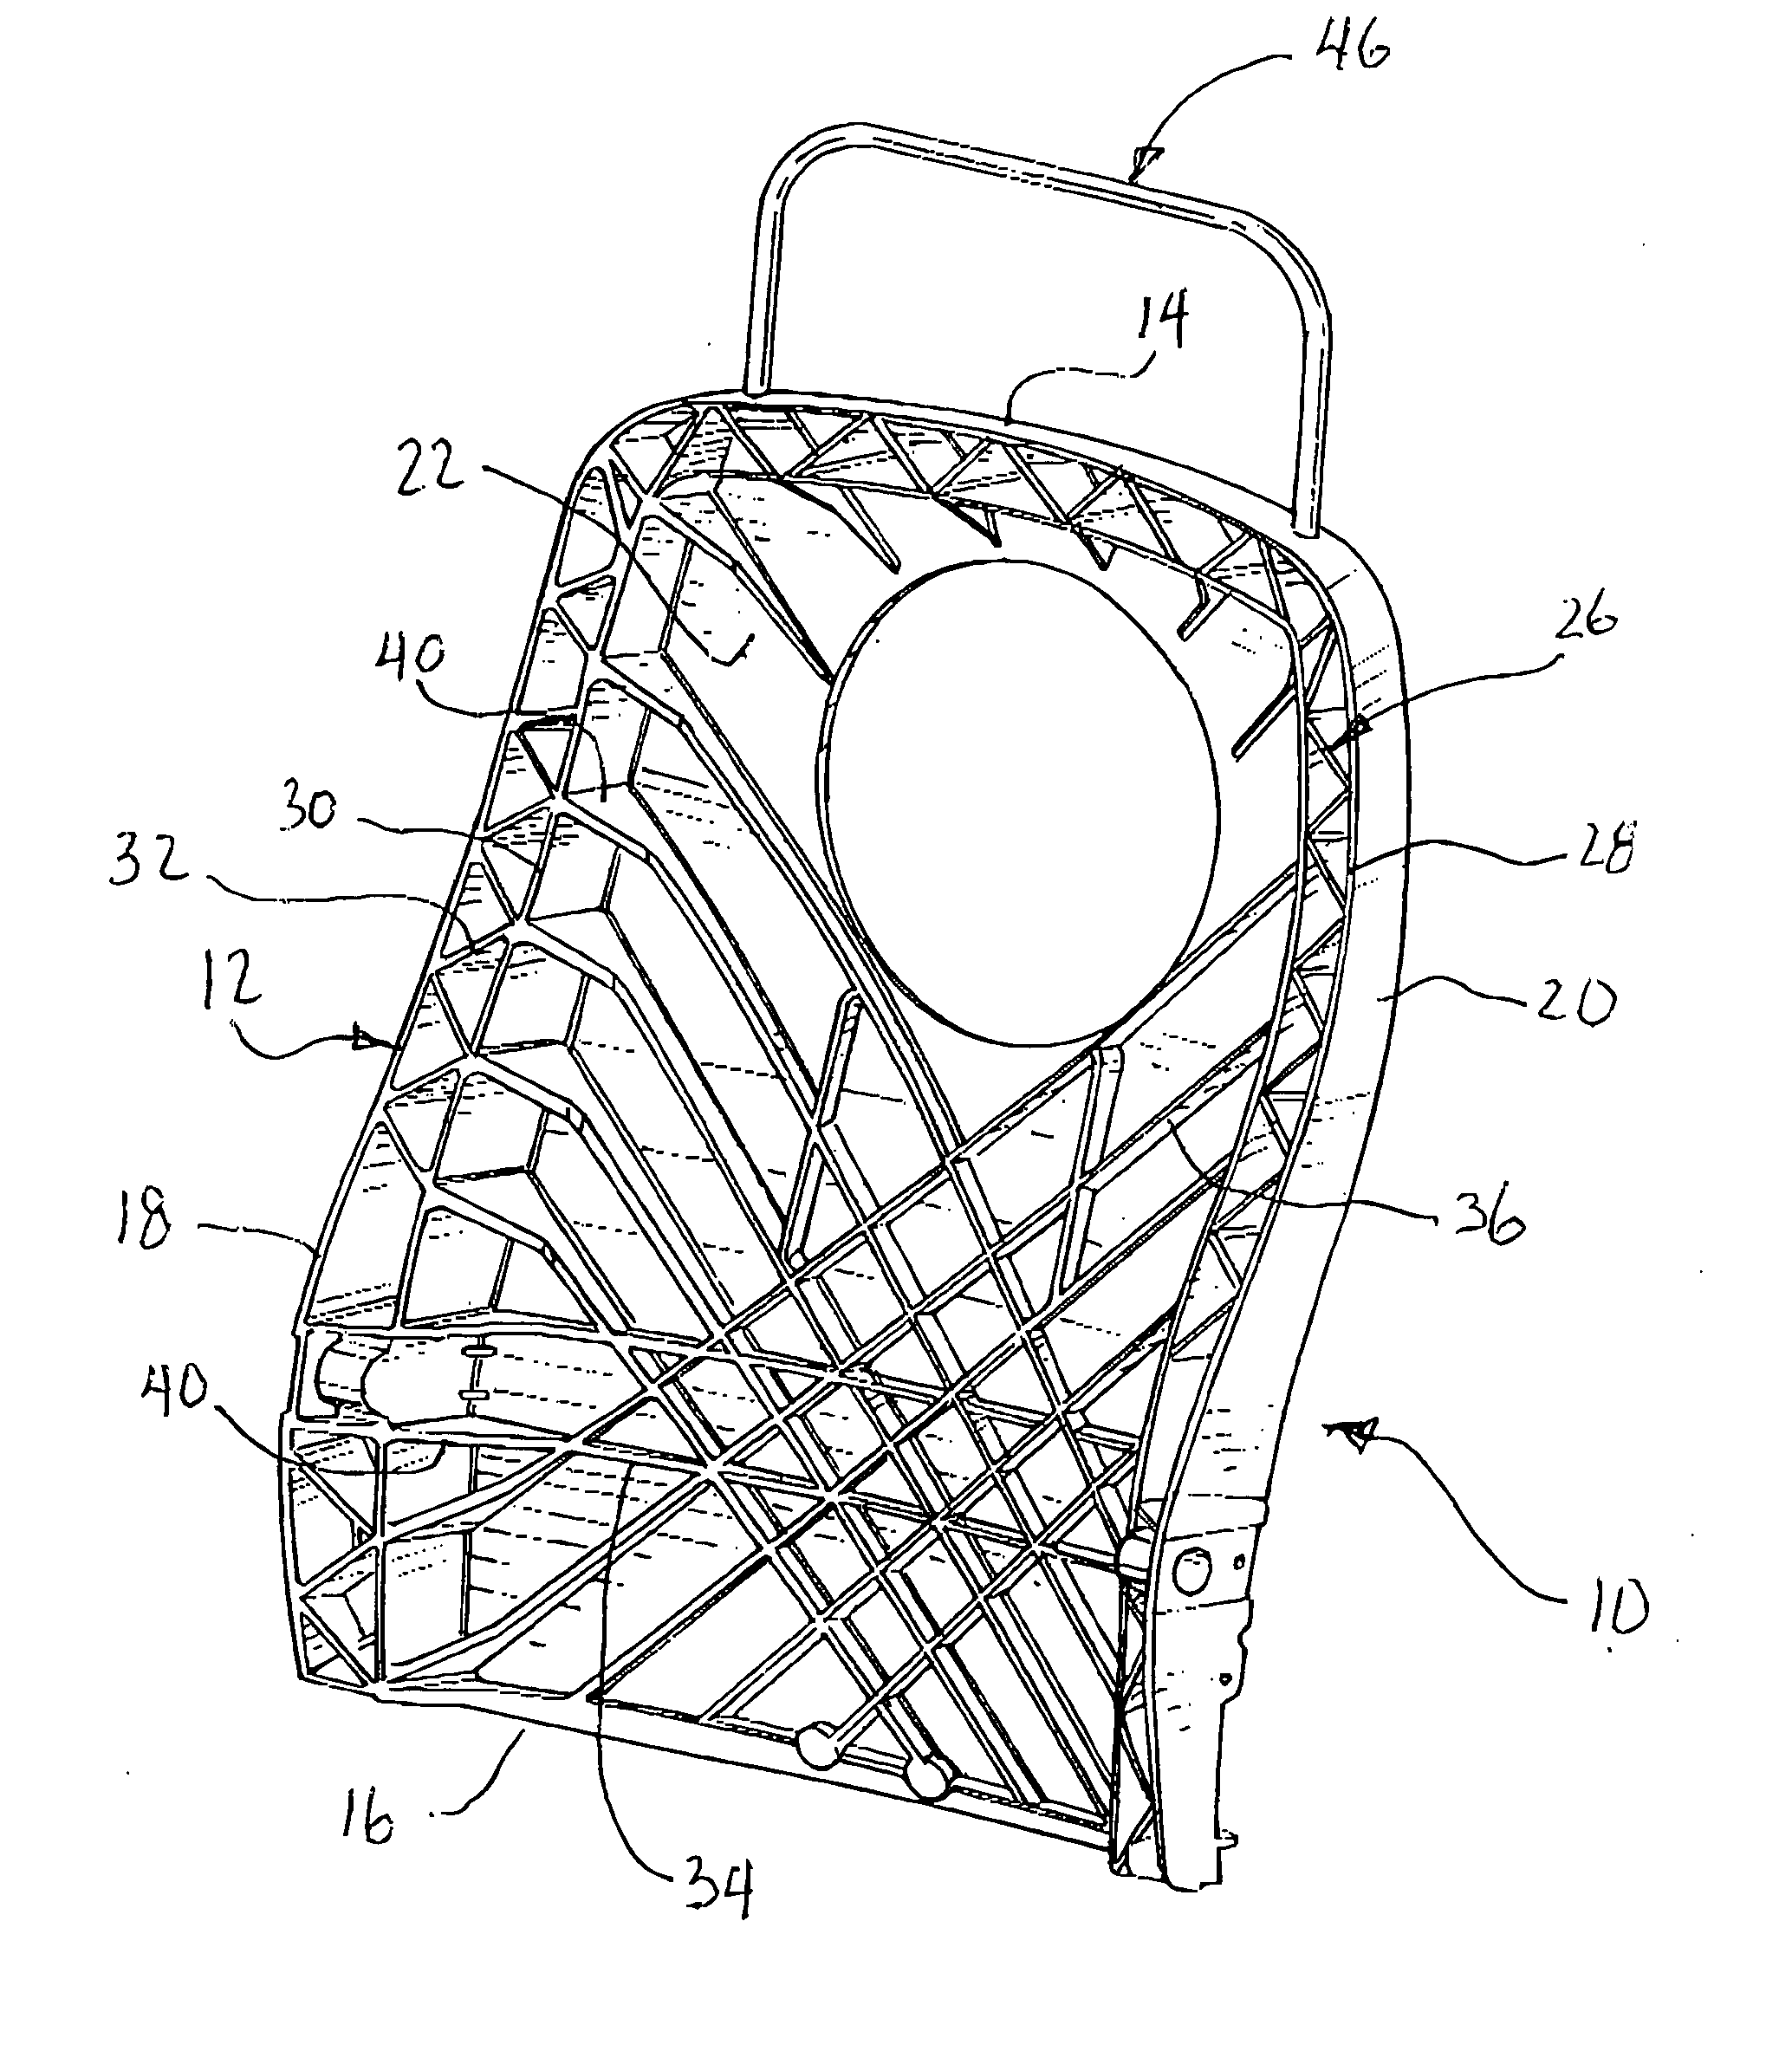 Vehicle seat frame